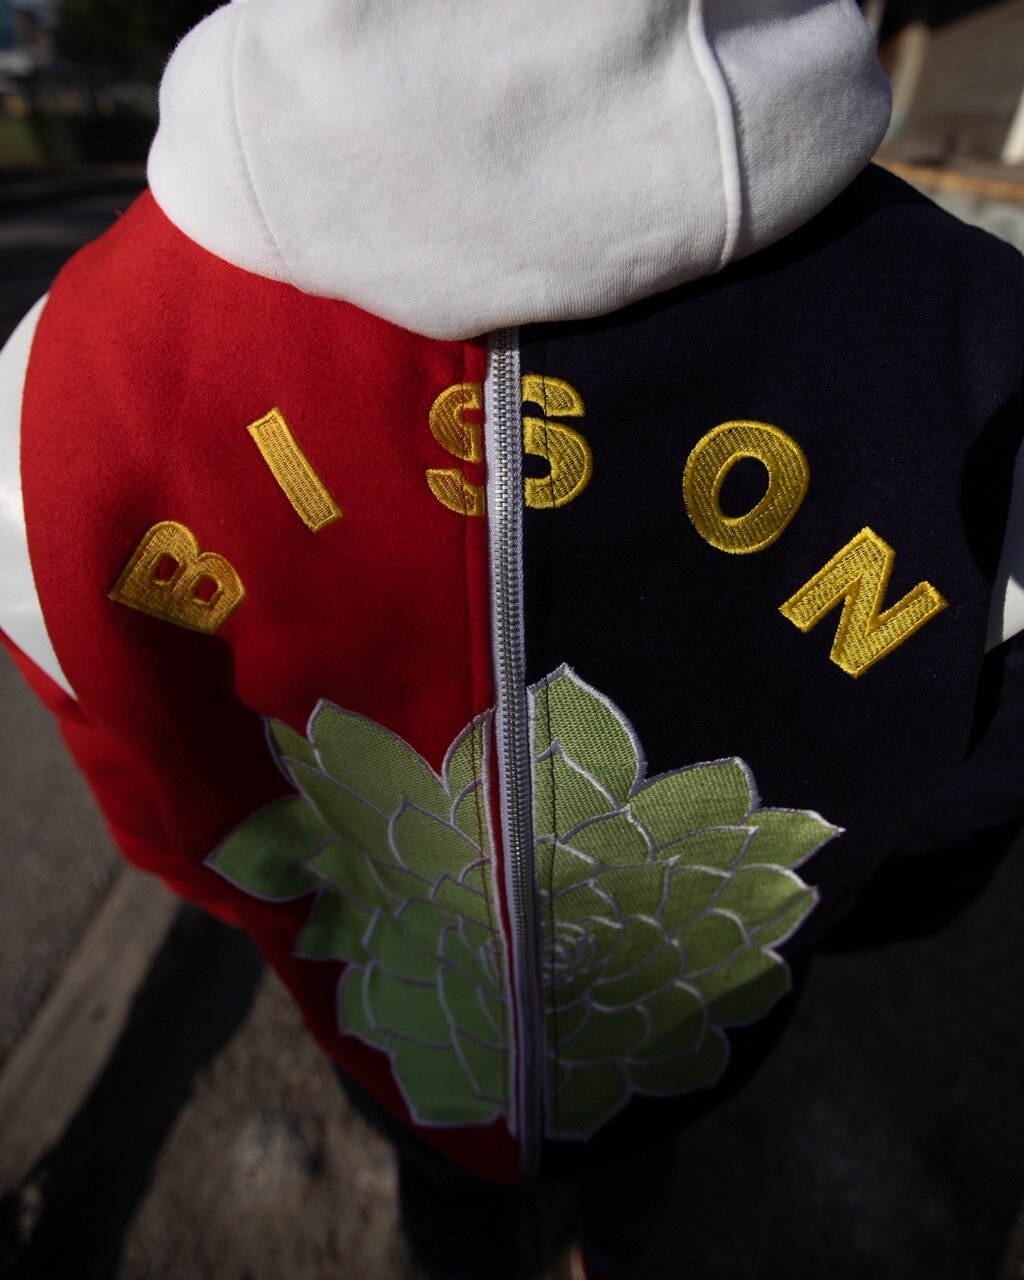 BISON Succulent Split Varsity Jacket